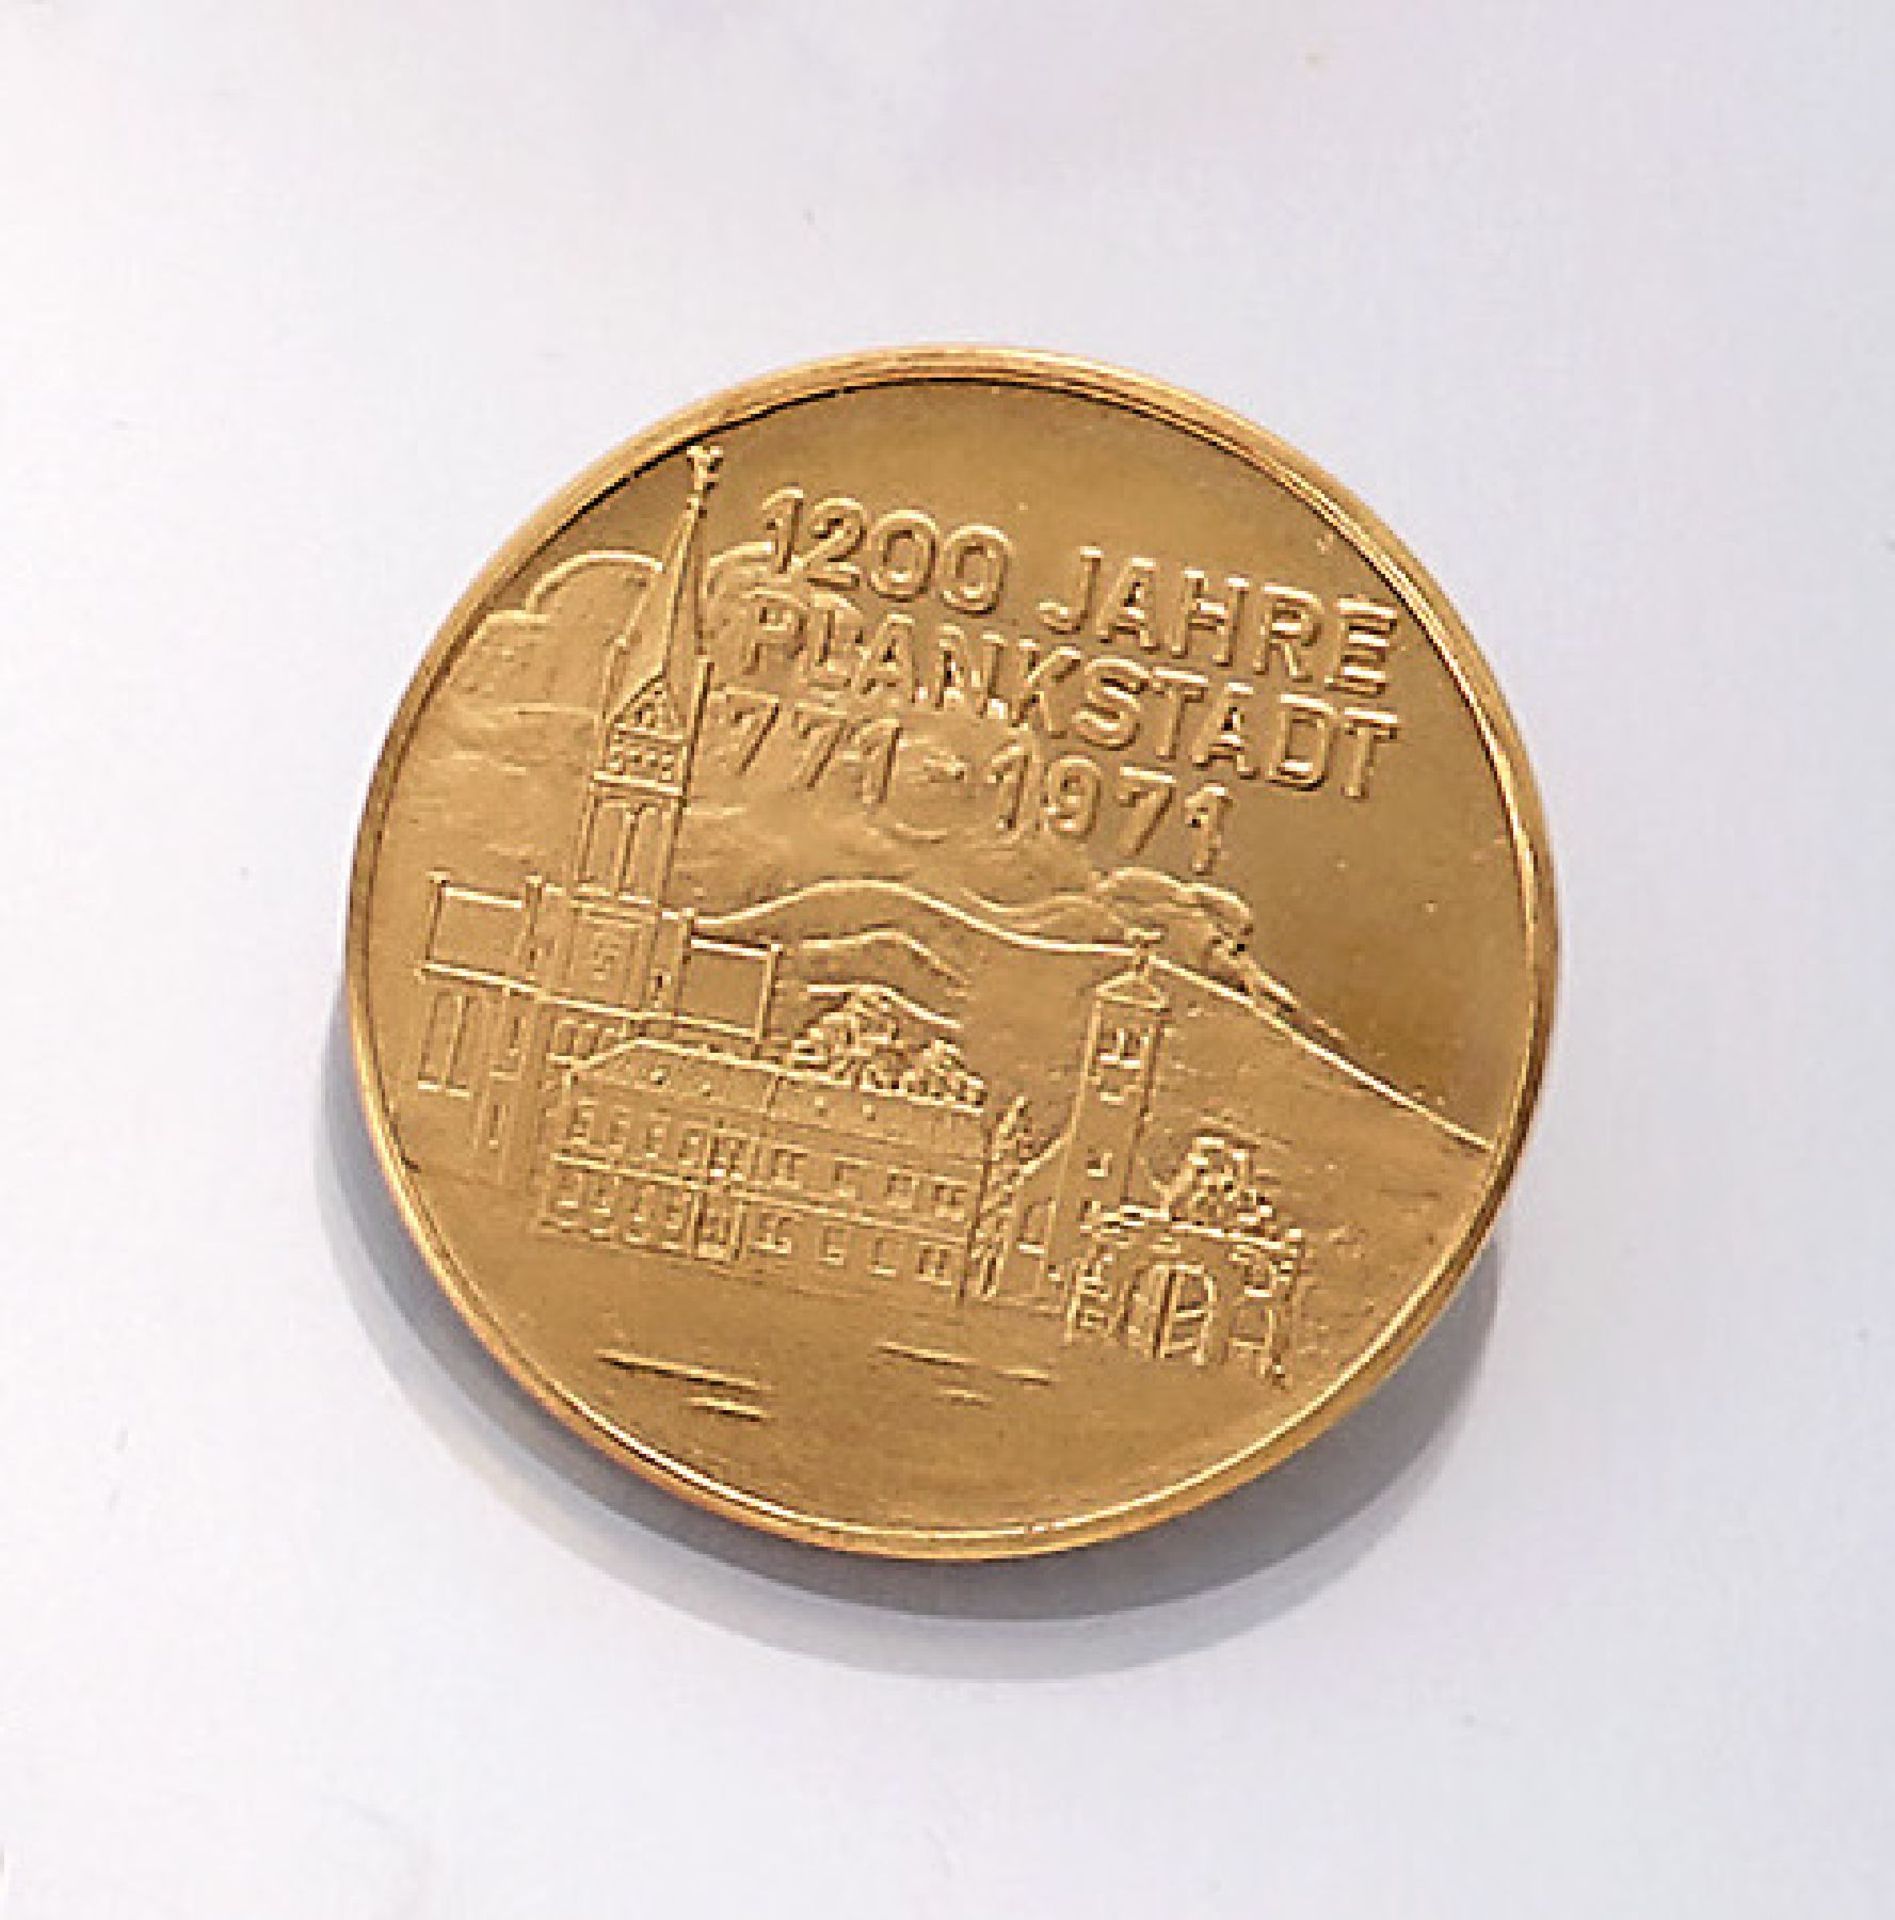 Gold-Medaille, GG 900/000, 1200 Jahre Plankstadt 771-1971, ca. 9.06 g, in Etui